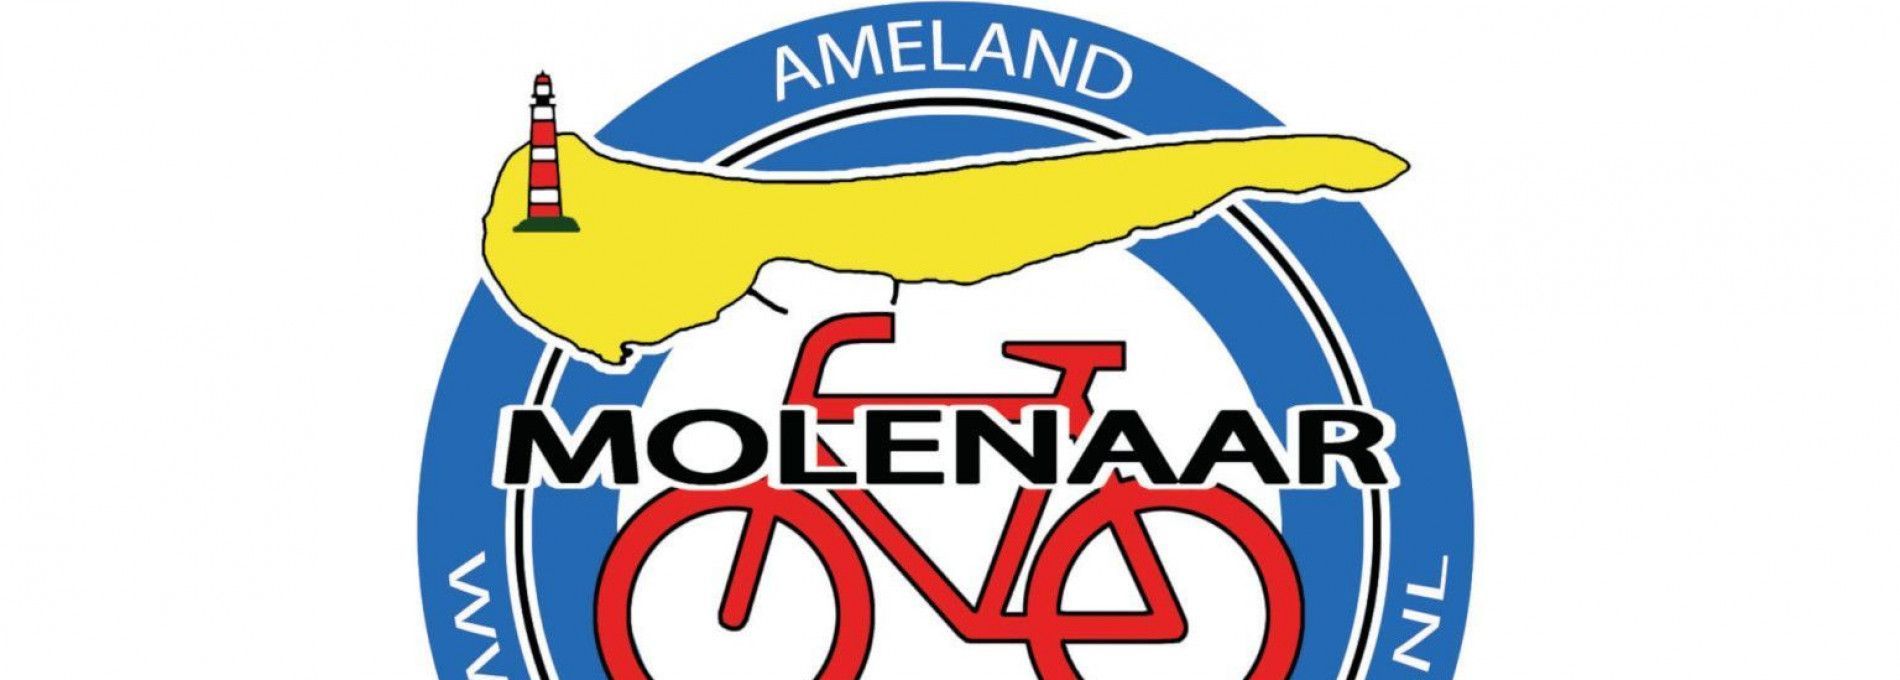 VOF Molenaar Fahrradverleih - VVV Ameland